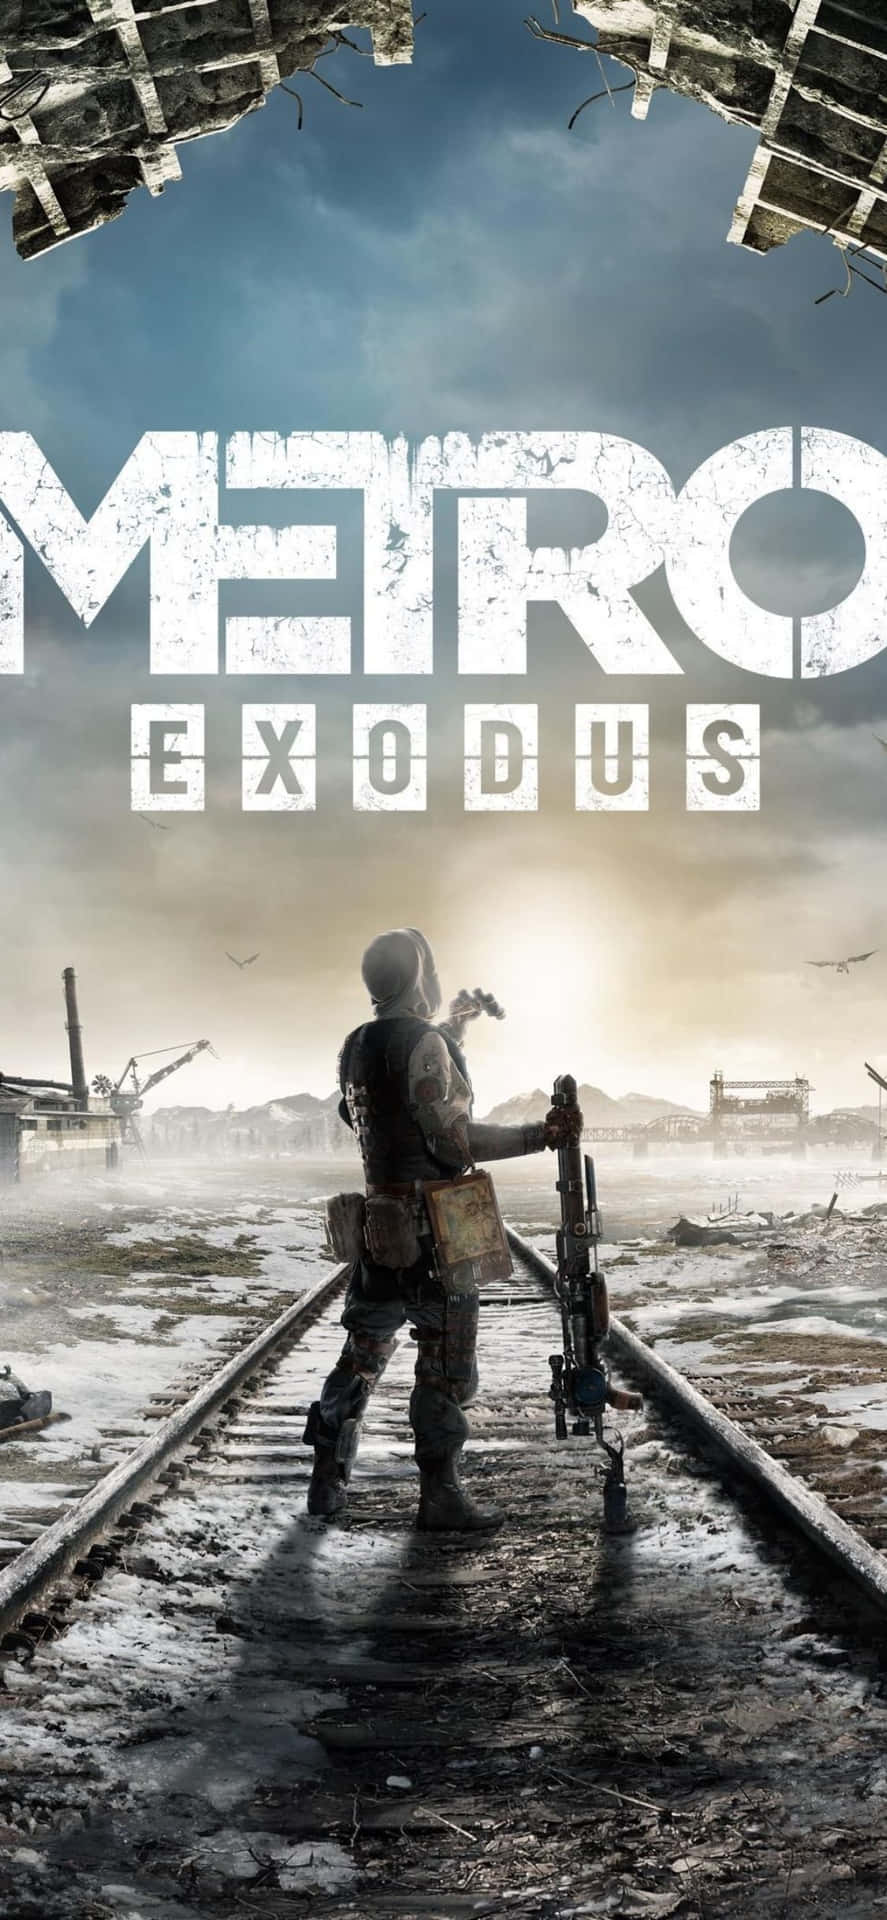 Bravely explore post-apocalyptic dangers in "Metro Exodus" for iPhone X